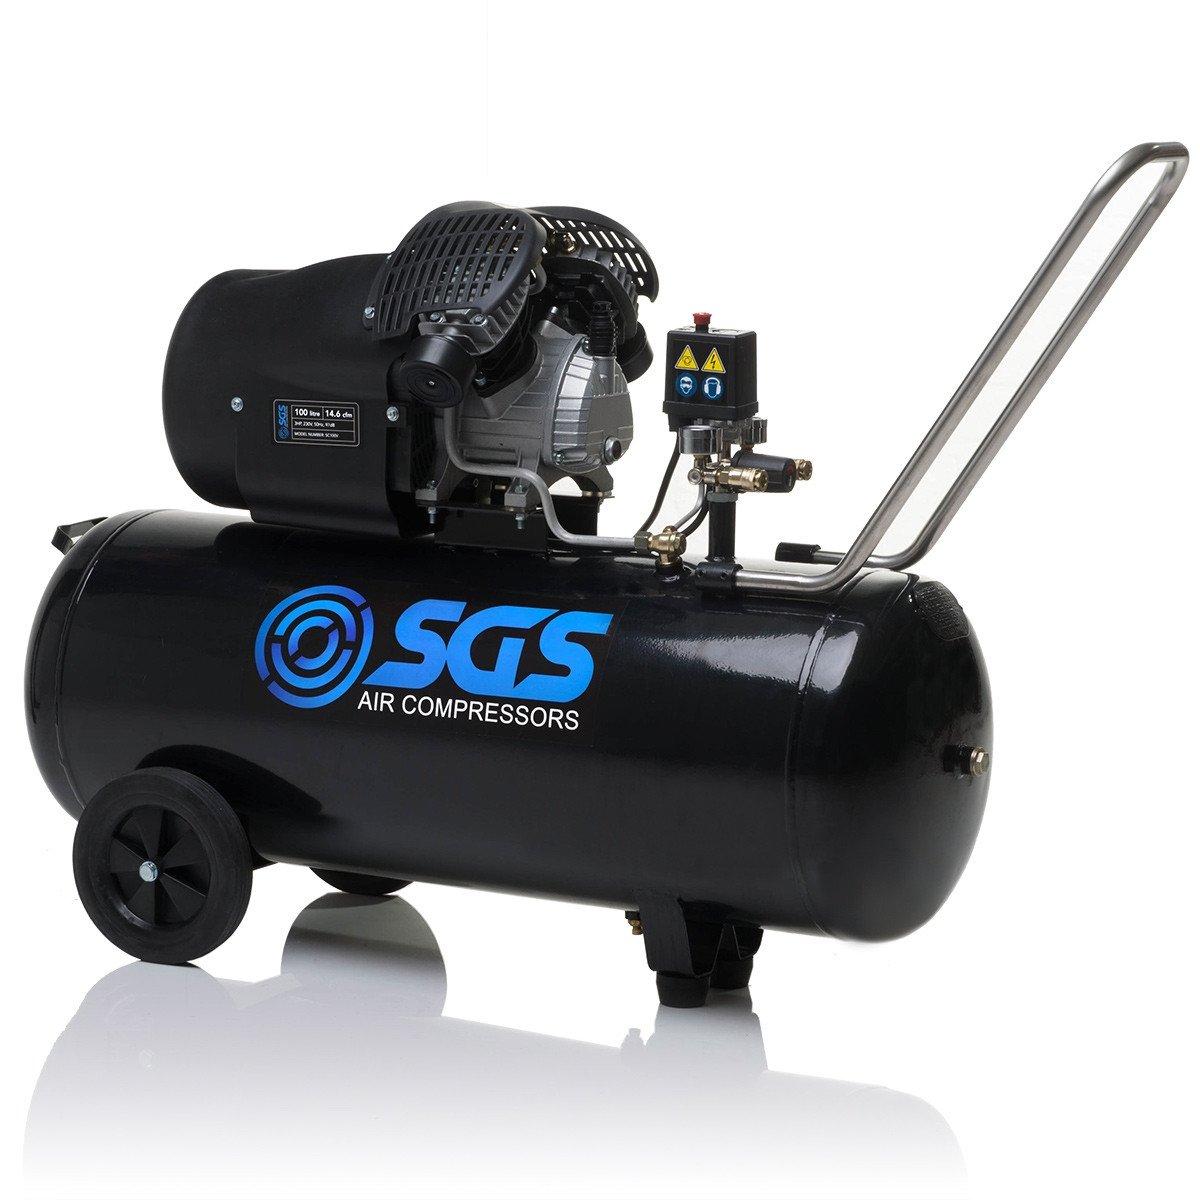 SGS 100升直接驱动空压机- 14.6CFM 3.0HP 100L